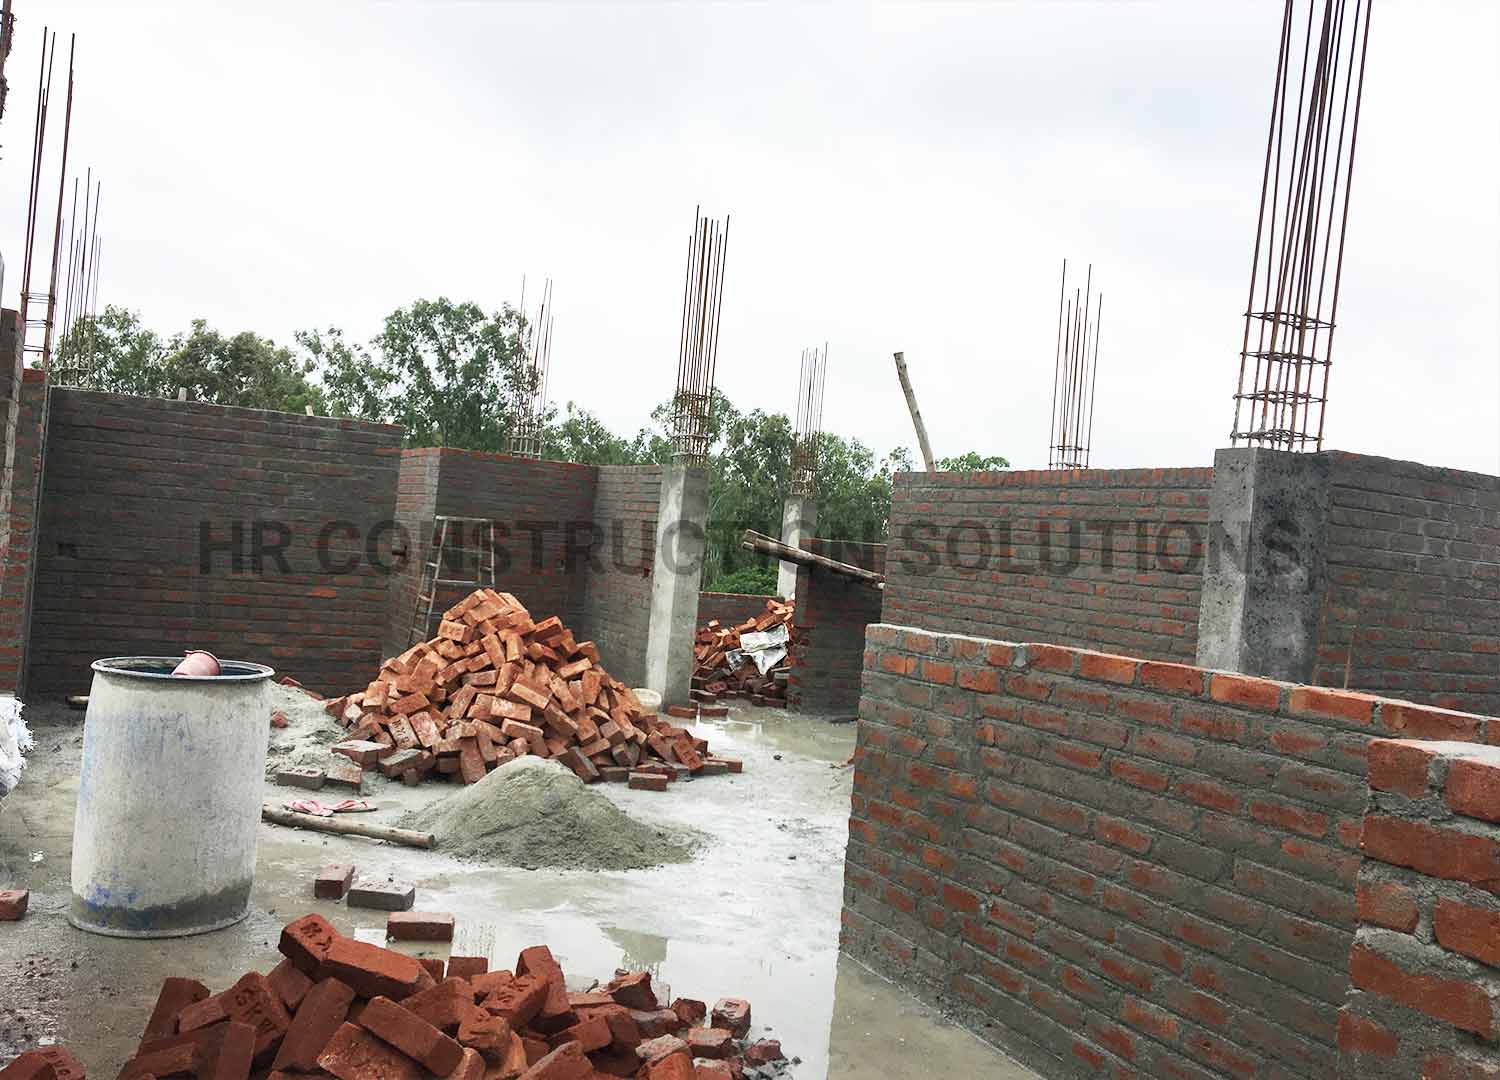 Pavan Client House | HRConstructionsolutions I Bangalore